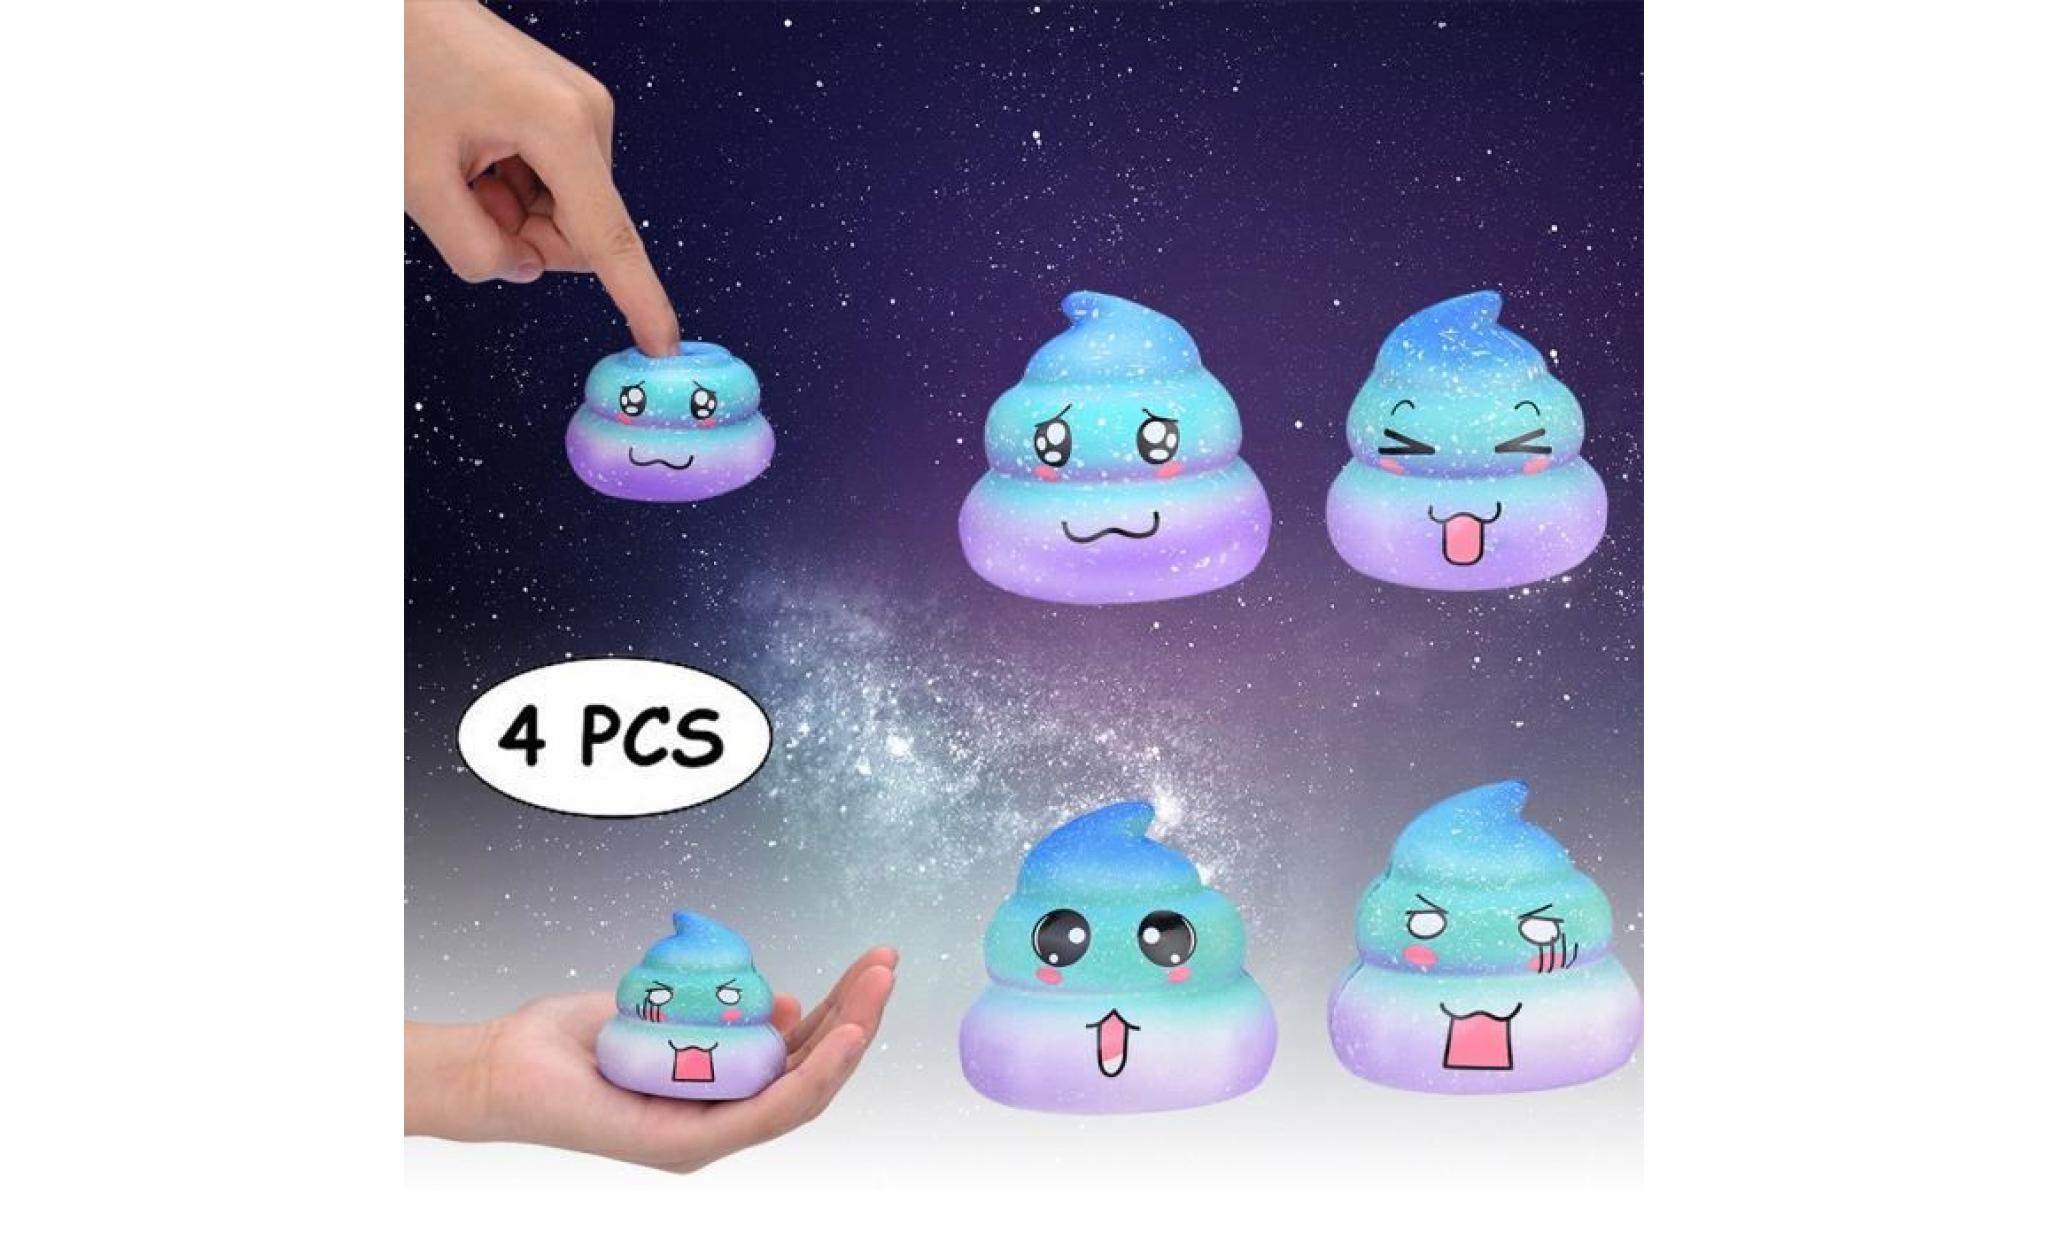 4pcs galaxy poo odeur agréable squishies jouets squeeze lente hausse du stress toys releveur zrj81025102_118